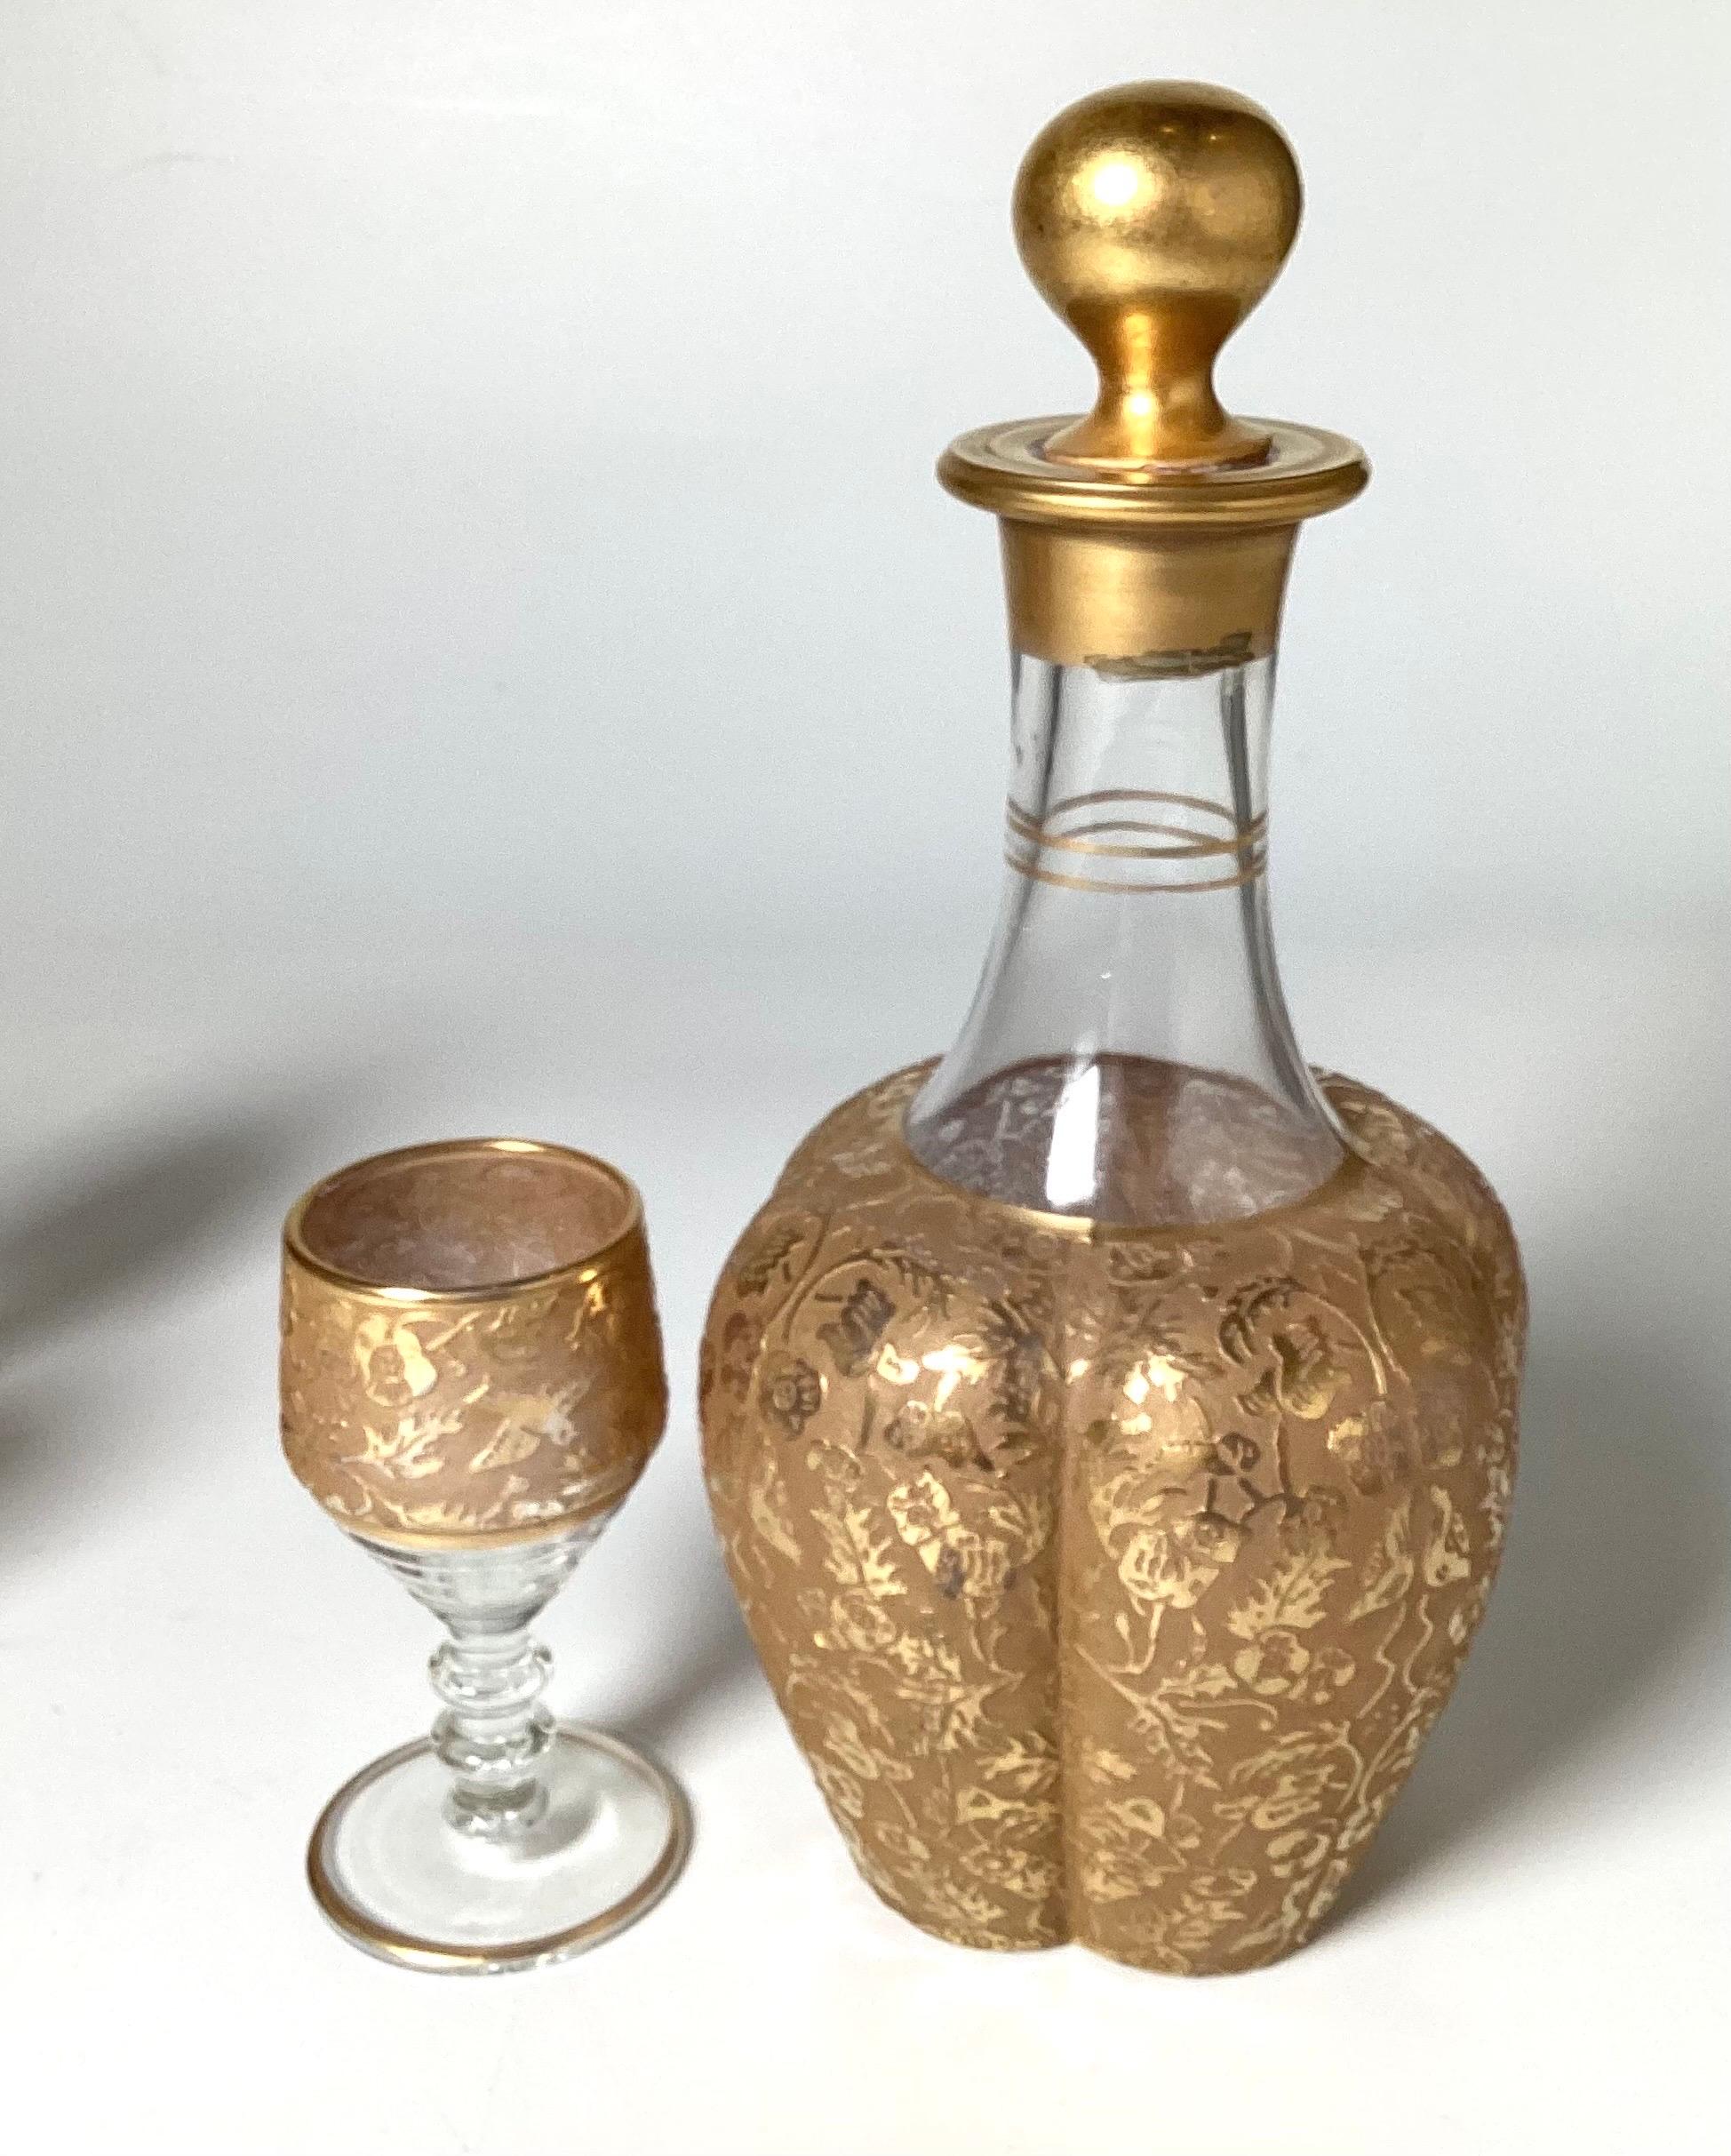 Un ensemble de carafes à cordial en verre doré et gravé. La carafe avec son bouchon original et 5 verres à cordial. Toutes les pièces ont une décoration gravée avec de lourdes garnitures dorées.